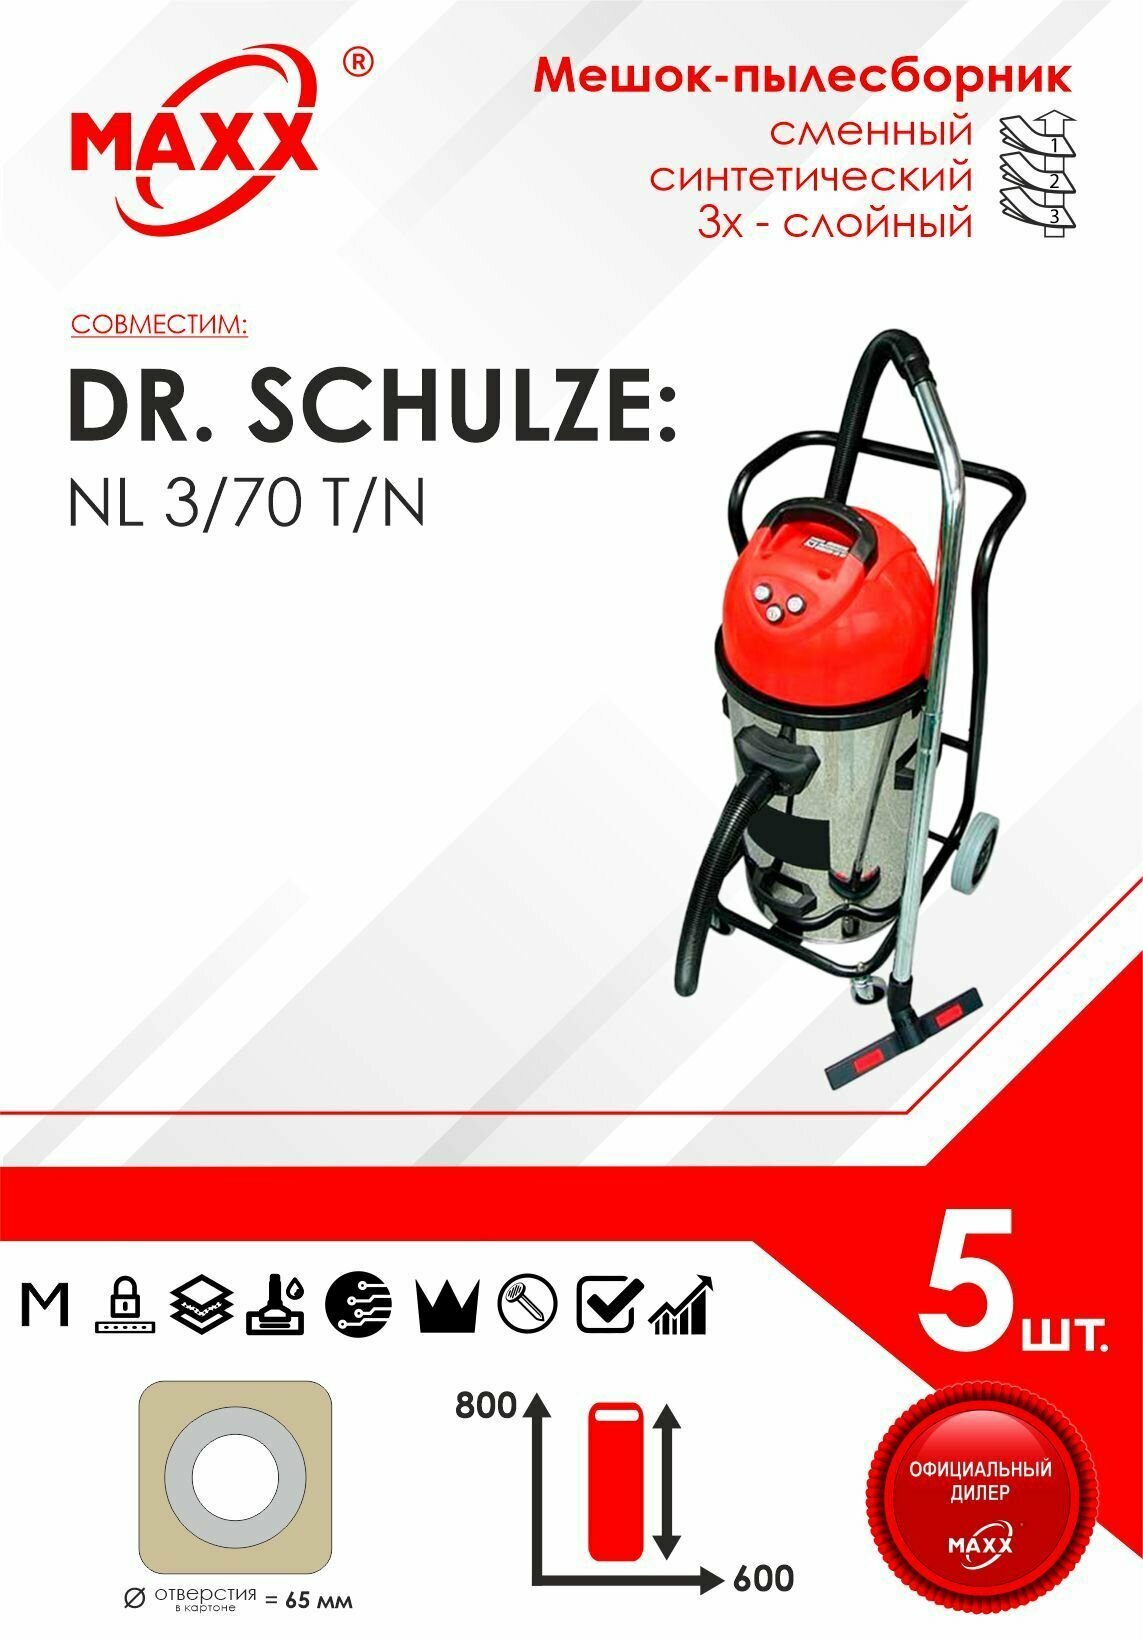 Мешок - пылесборник 5 шт. для пылесоса Dr. Schulze NL 3/70 T/N